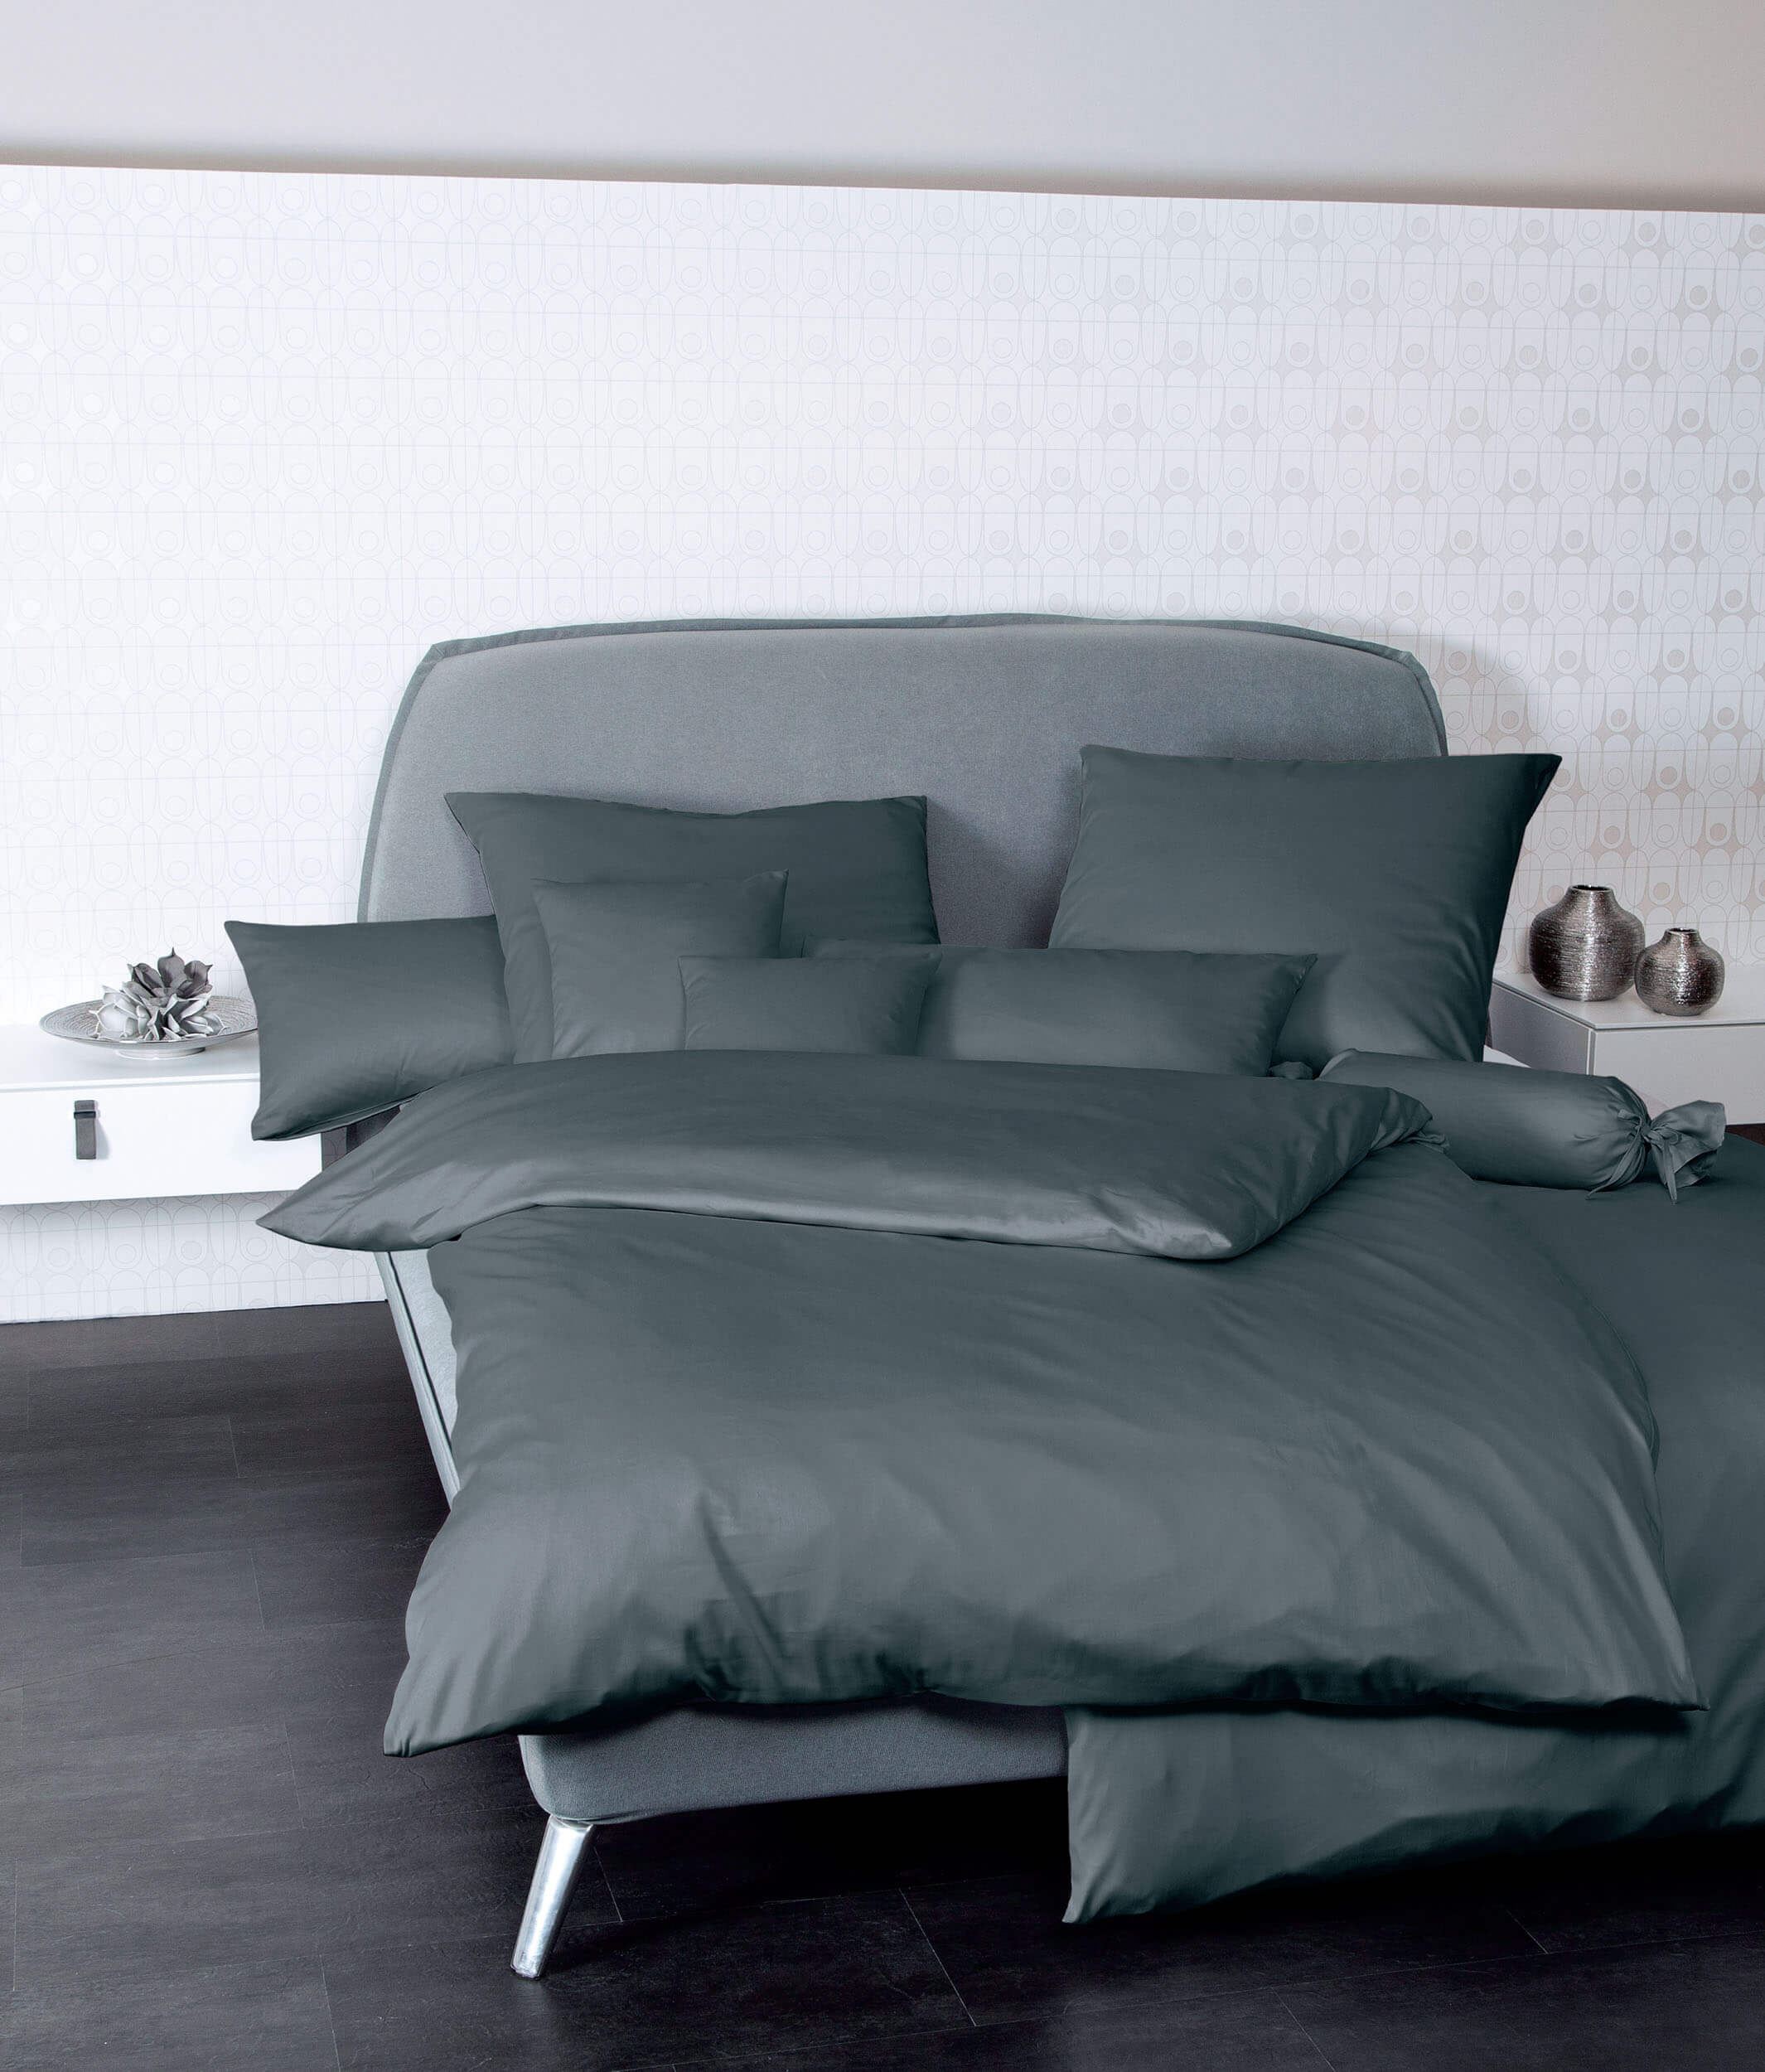 Серое постельное белье Colors Anthrazit ☞ Размер пододеяльника: 200 x 220 см ☞ Размер простыни: Без простыни ☞ Размер наволочек: 50 x 70 см (2 шт.)